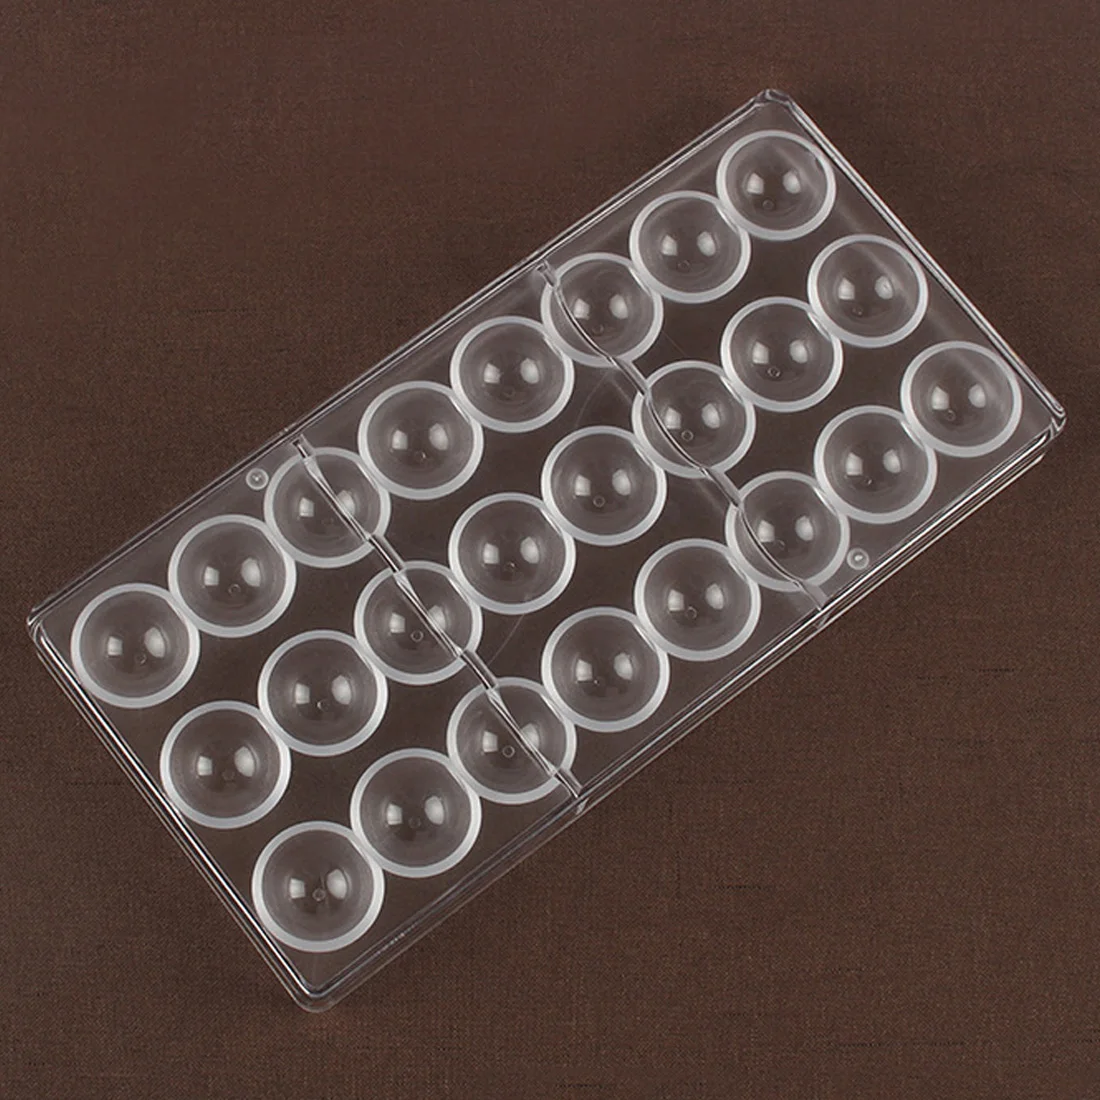 24 cavidades 3D Semi Esfera de cocina de Plástico de Chocolate en Forma de Bola de Policarbonato DIY Moldes de Pastelería Herramientas 3